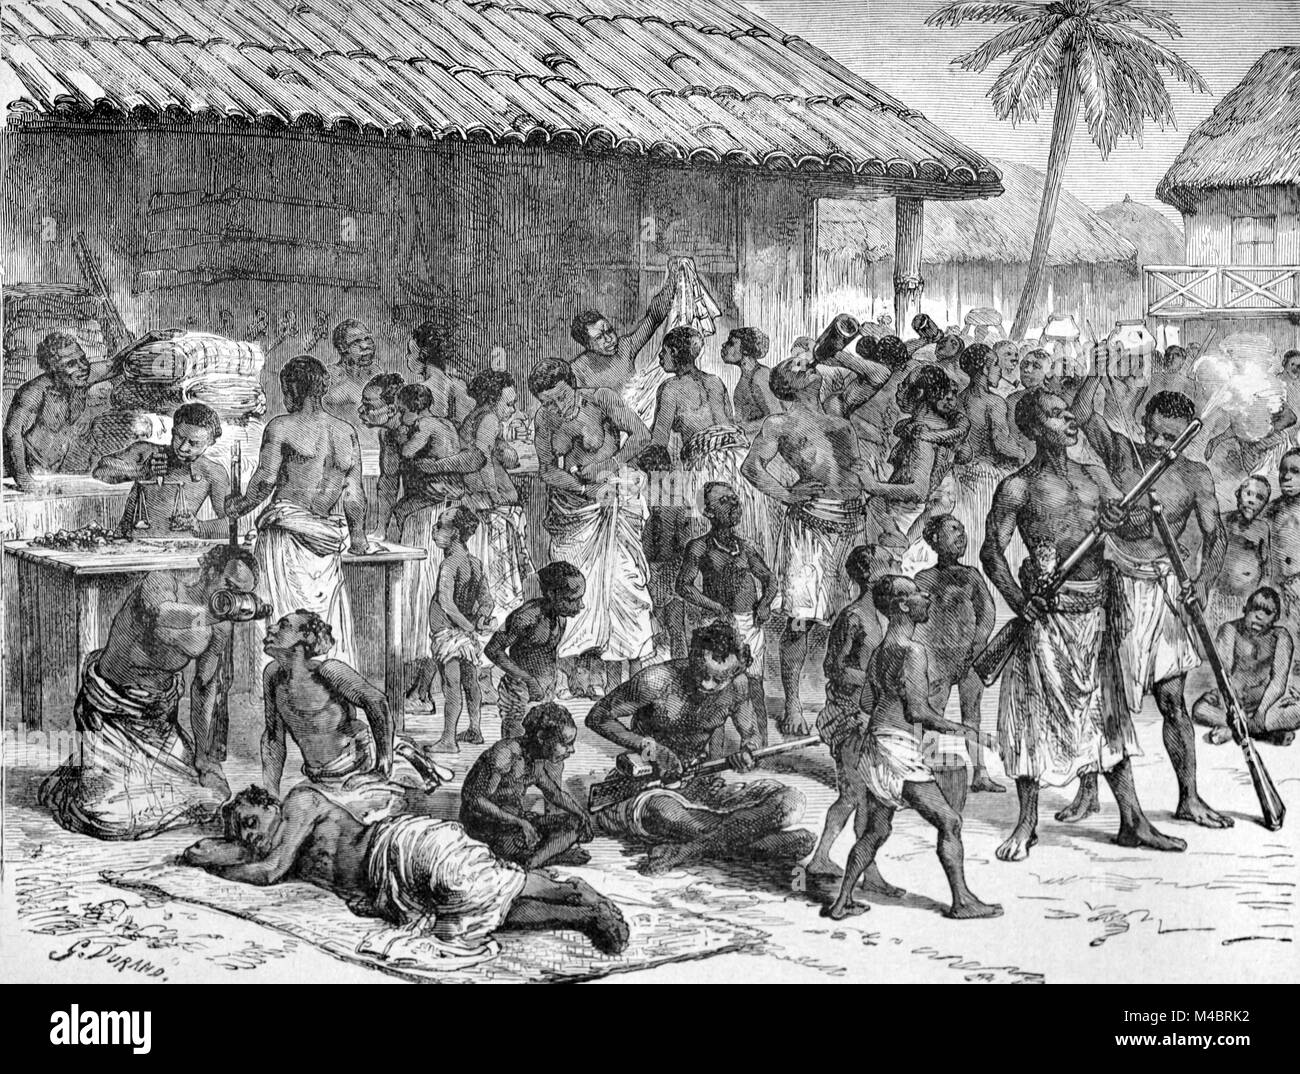 Des esclaves ou de l'esclavage parmi les Cafres de la péninsule du Cap Afrique du Sud (gravure, 1880) Banque D'Images